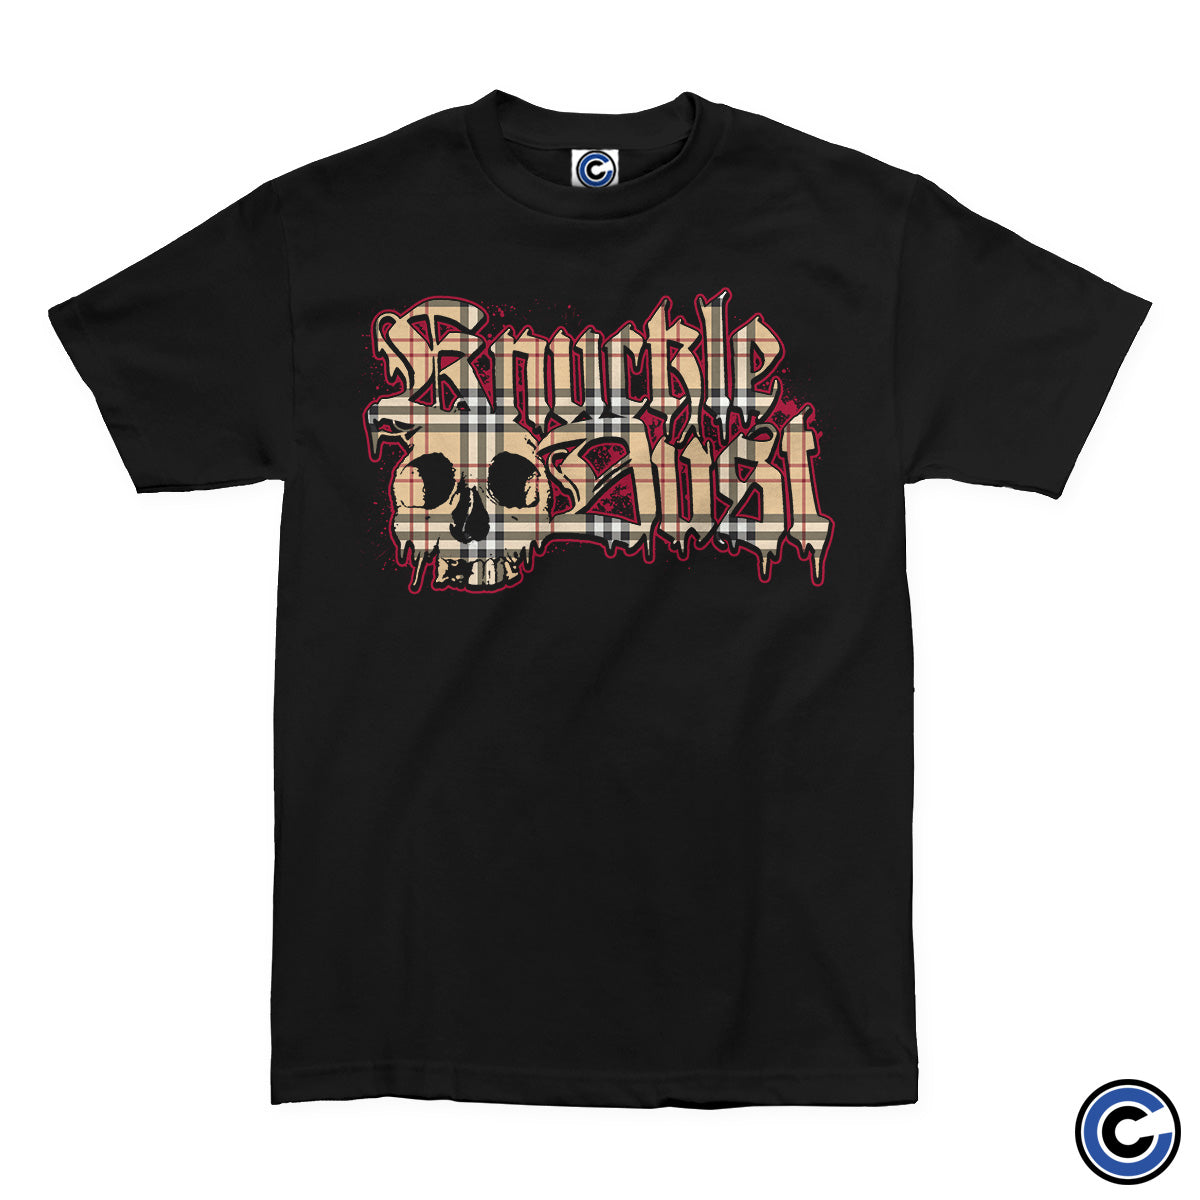 Knuckledust "Burberry Skull Logo" Shirt